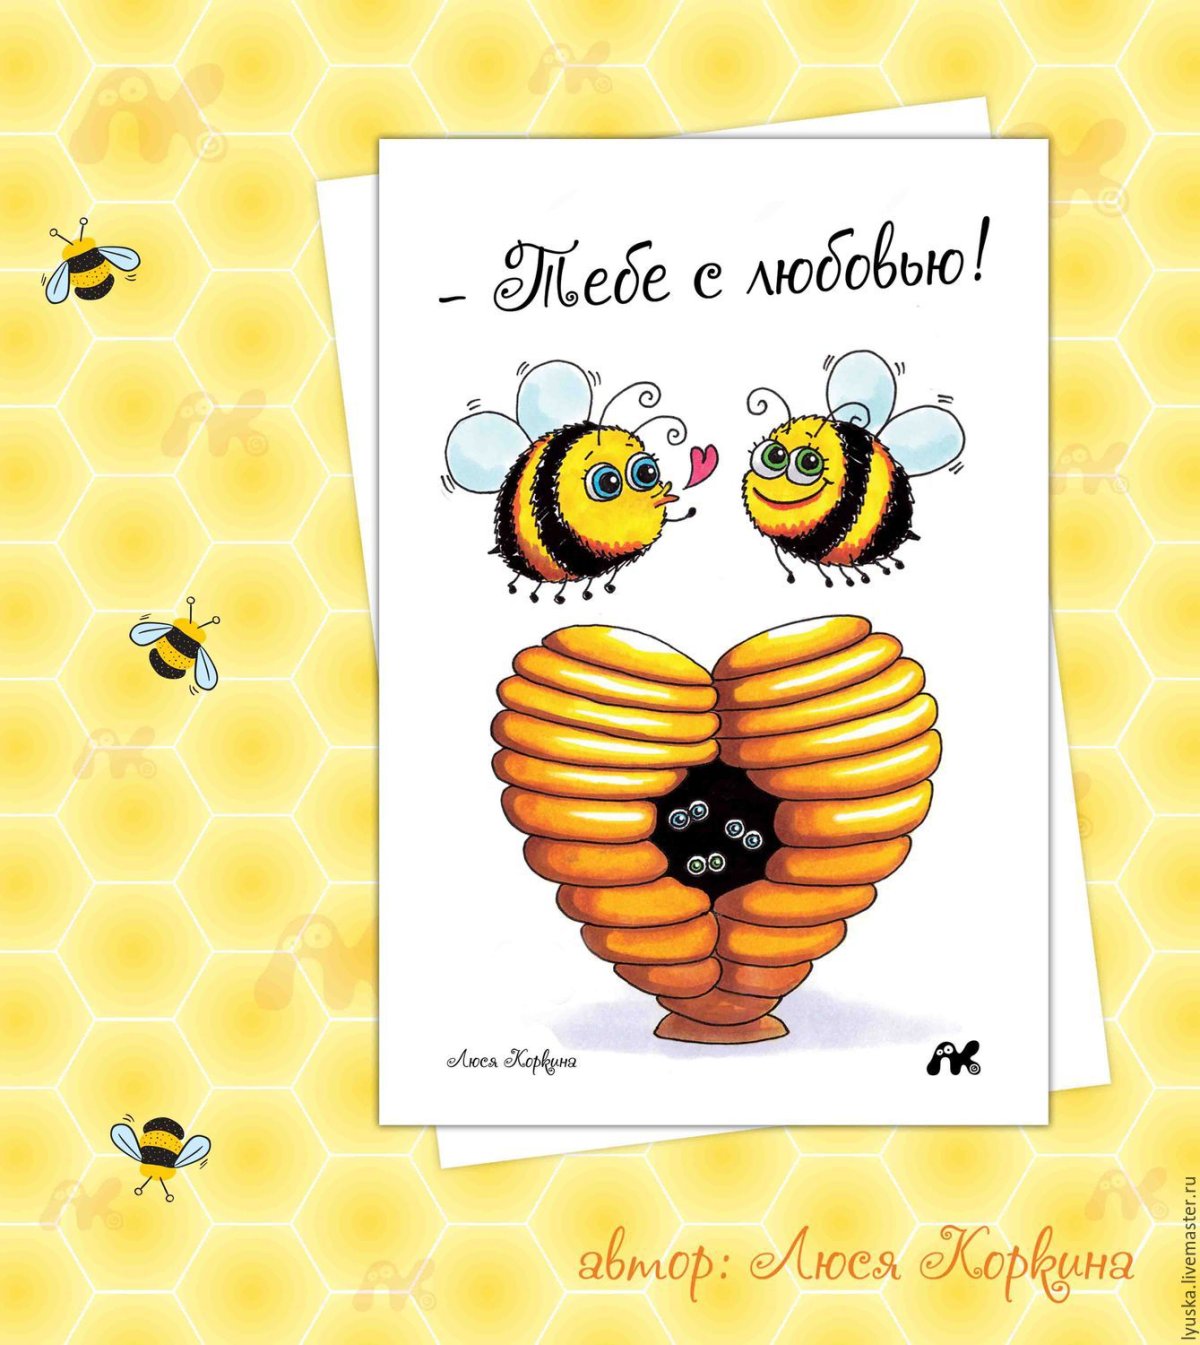 Почтовая эко-открытка для посткроссинга Подснежники и пчела